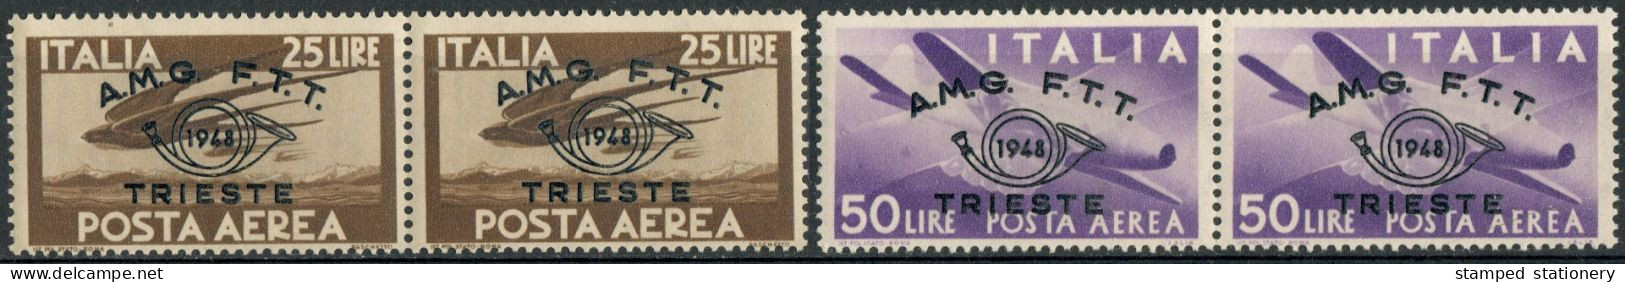 AMG-FTT 1948 POSTA AEREA L. 25 50 CONVEGNO FILATELICO TRIESTE SOPRASTAMPATI 'AMG-FTT' COLLA BICOLORE - SASSONE PA18/9 - Airmail